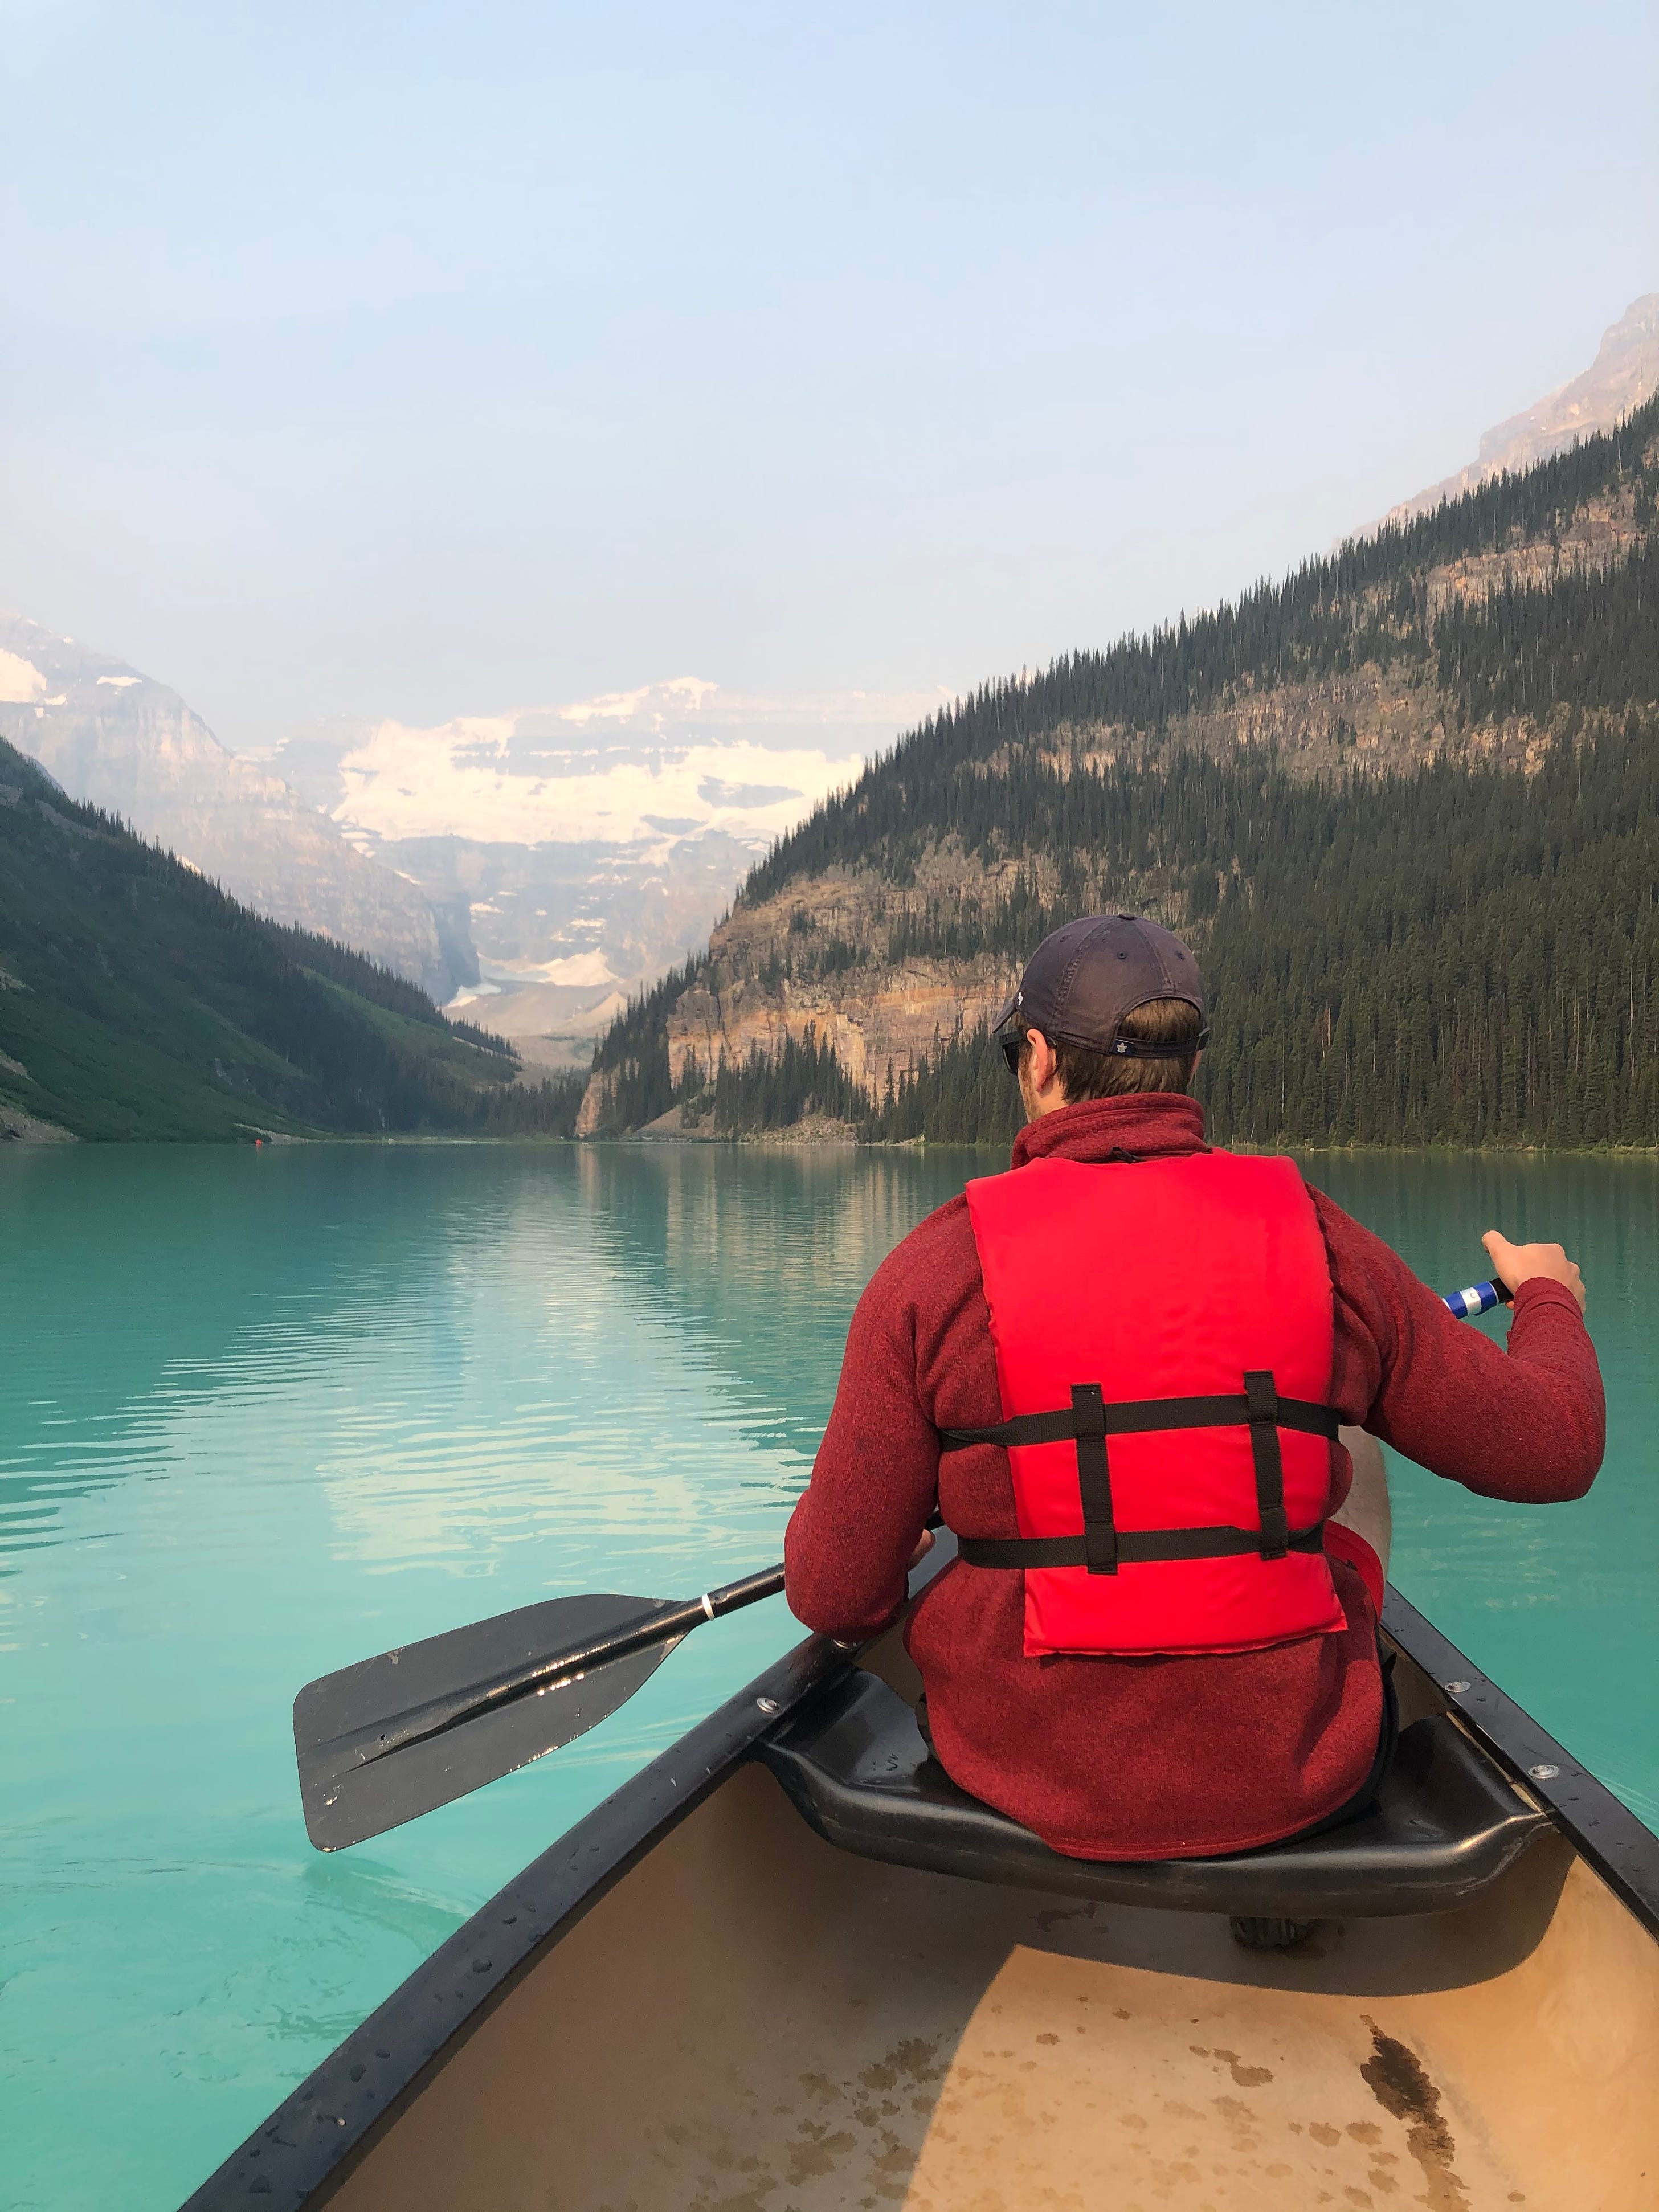 Canoeing on Lake Louise. AB, Canada. July 2021.